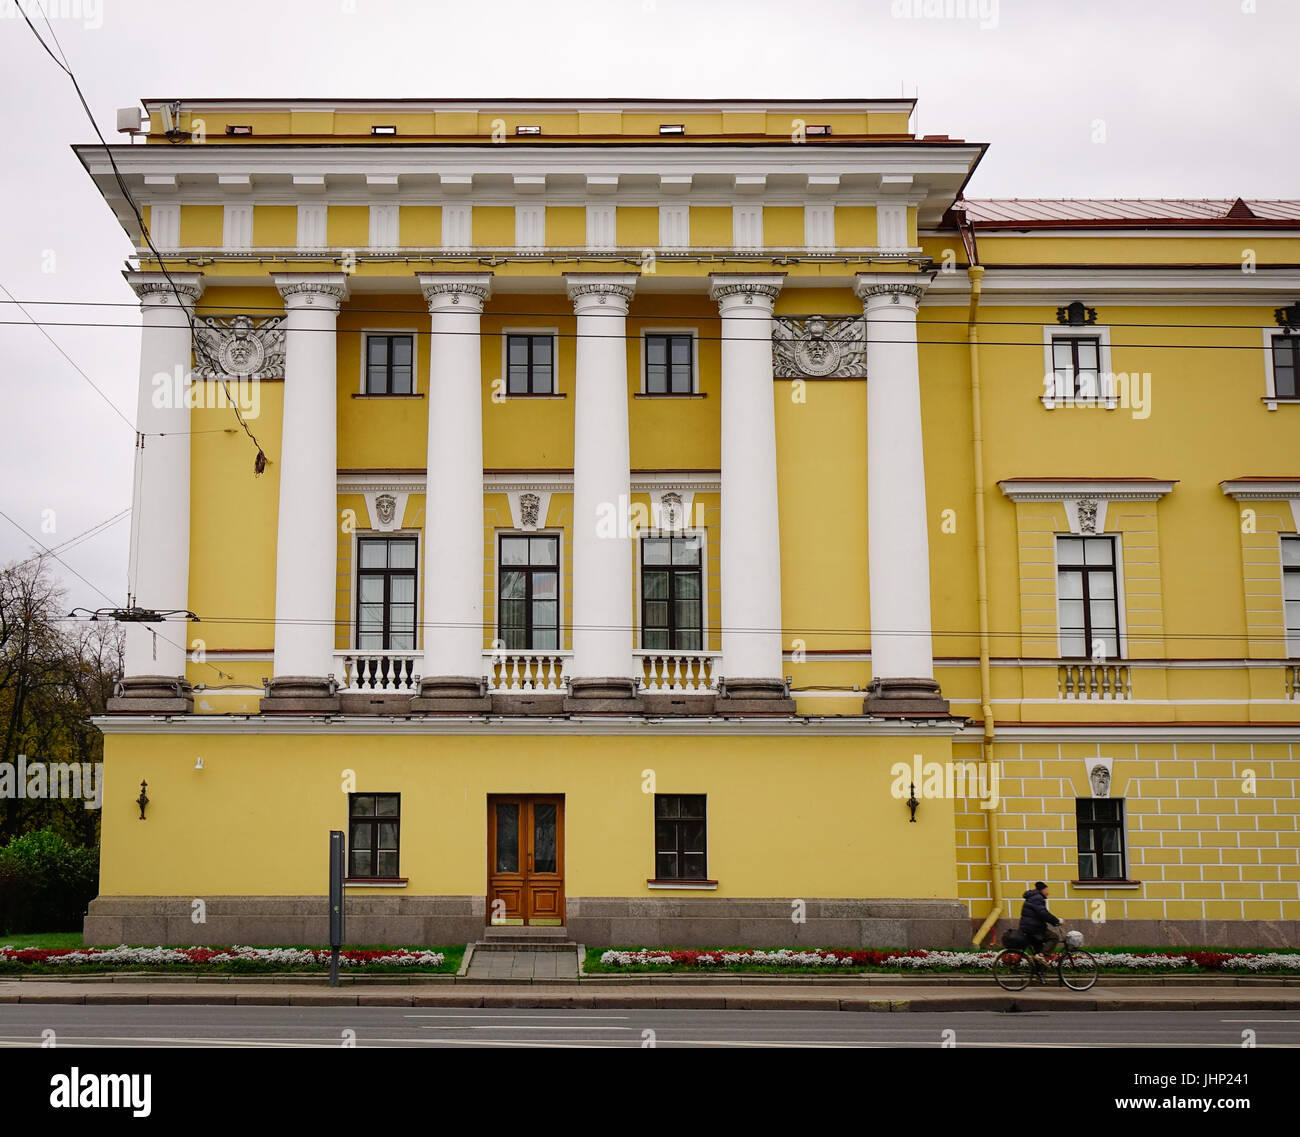 Sankt Petersburg, Russland - 10. Oktober 2016. Teil der Admiralität Gebäude in der Innenstadt von Sankt Petersburg, Russland. St. Petersburg ist die meisten westlichen Stadt o Stockfoto